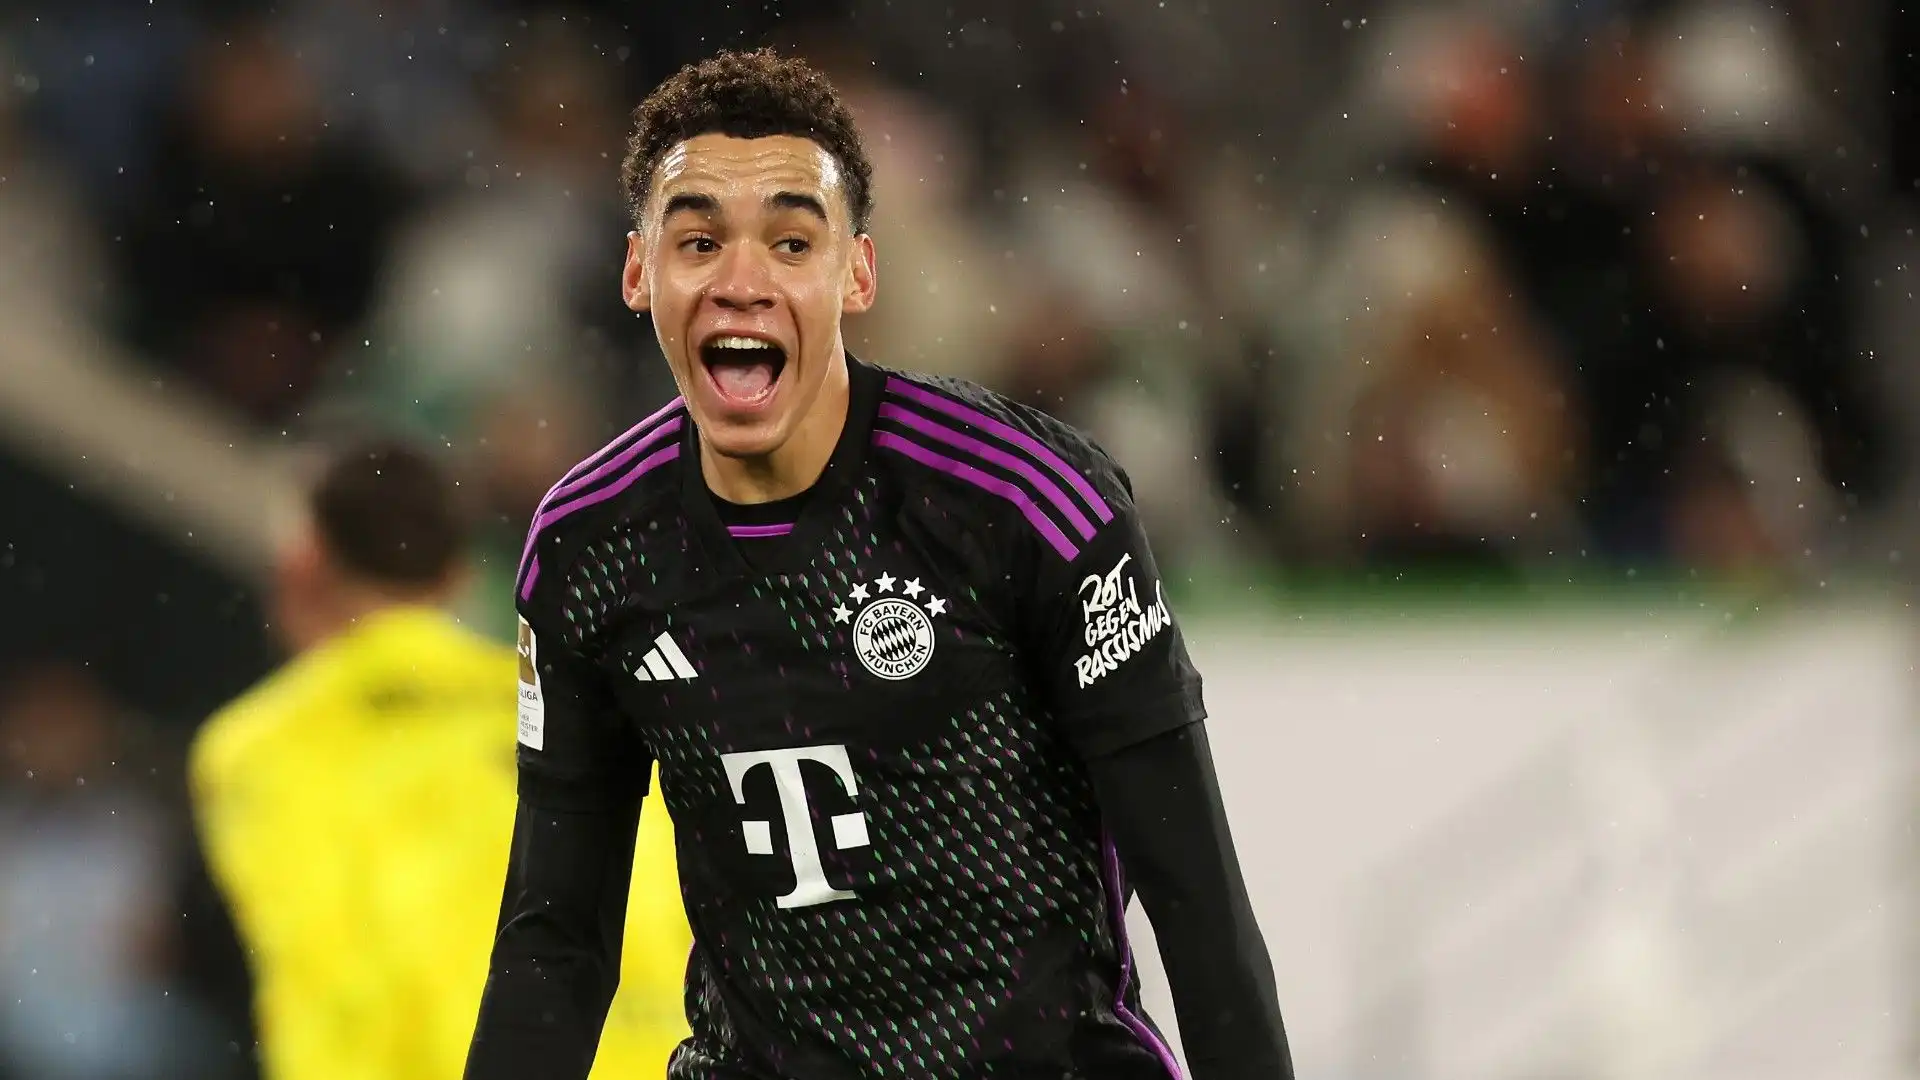 Il giovane campione ha un contratto con il Bayern Monaco fino al 2026